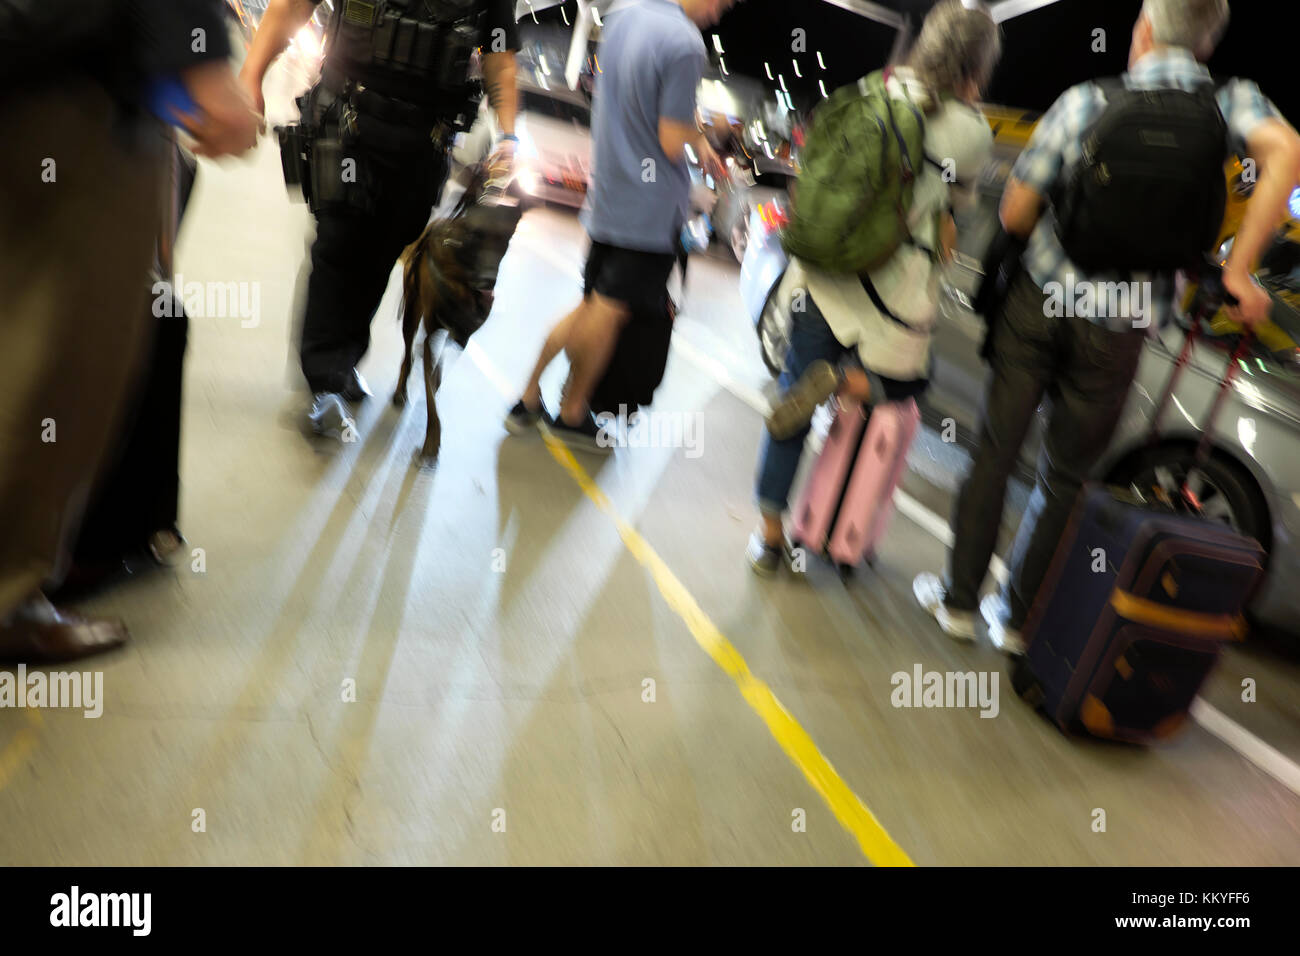 Verschwommenes Bild von Polizisten zu Fuß hund Vergangenheit Menschen Warten auf Abholung durch ein Uber Taxi am Flughafen LAX Flughafen Los Angeles Kalifornien USA KATHY DEWITT Stockfoto